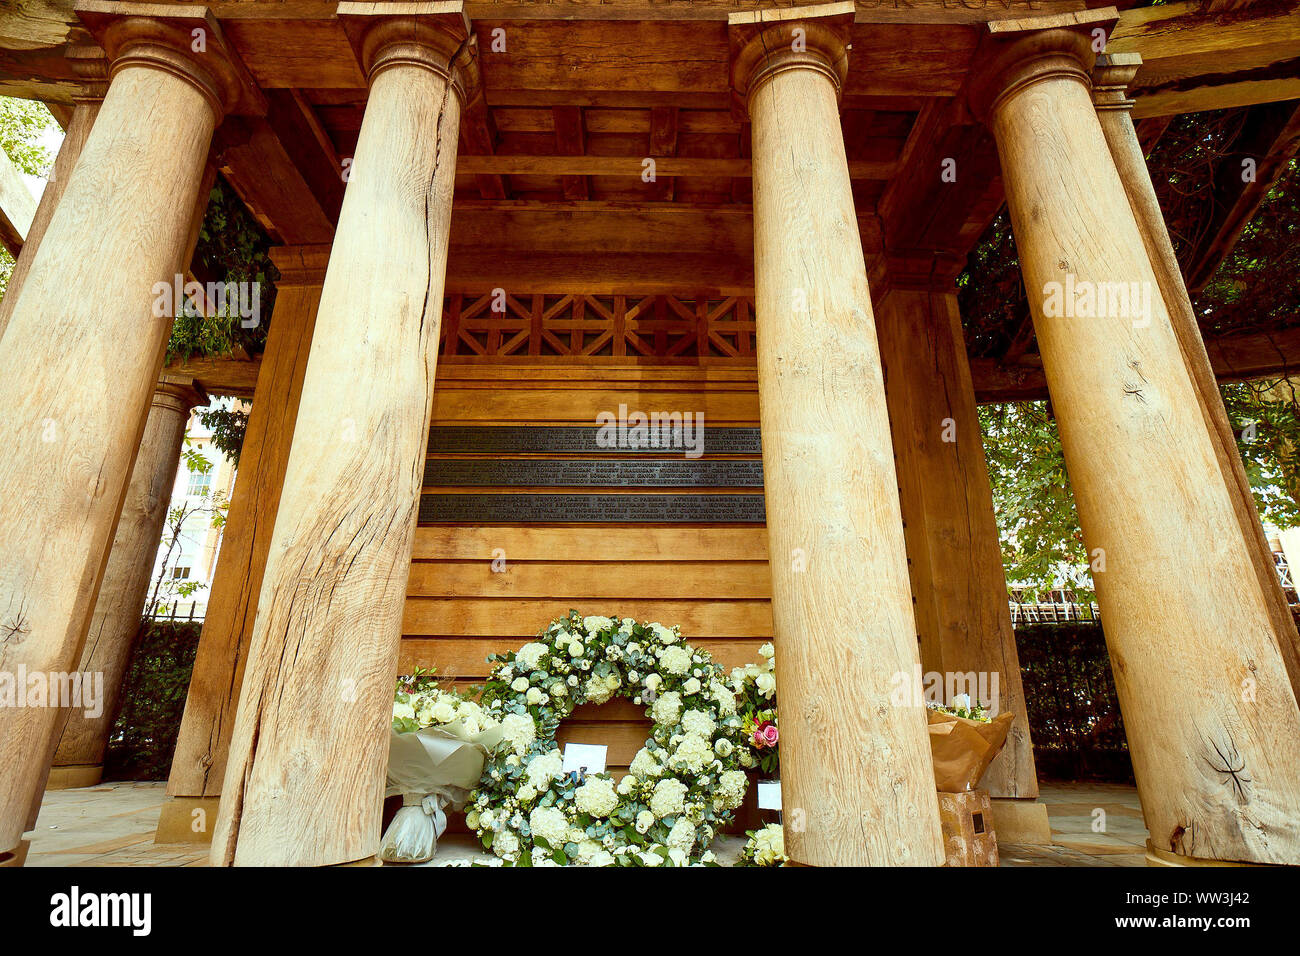 Londres, Royaume-Uni - 12 septembre 2019 : Fleurs placé au 11 septembre dans le jardin commémoratif Grosvenor Square pour la 18e annoiversary de l'attaque du 9/11. Banque D'Images